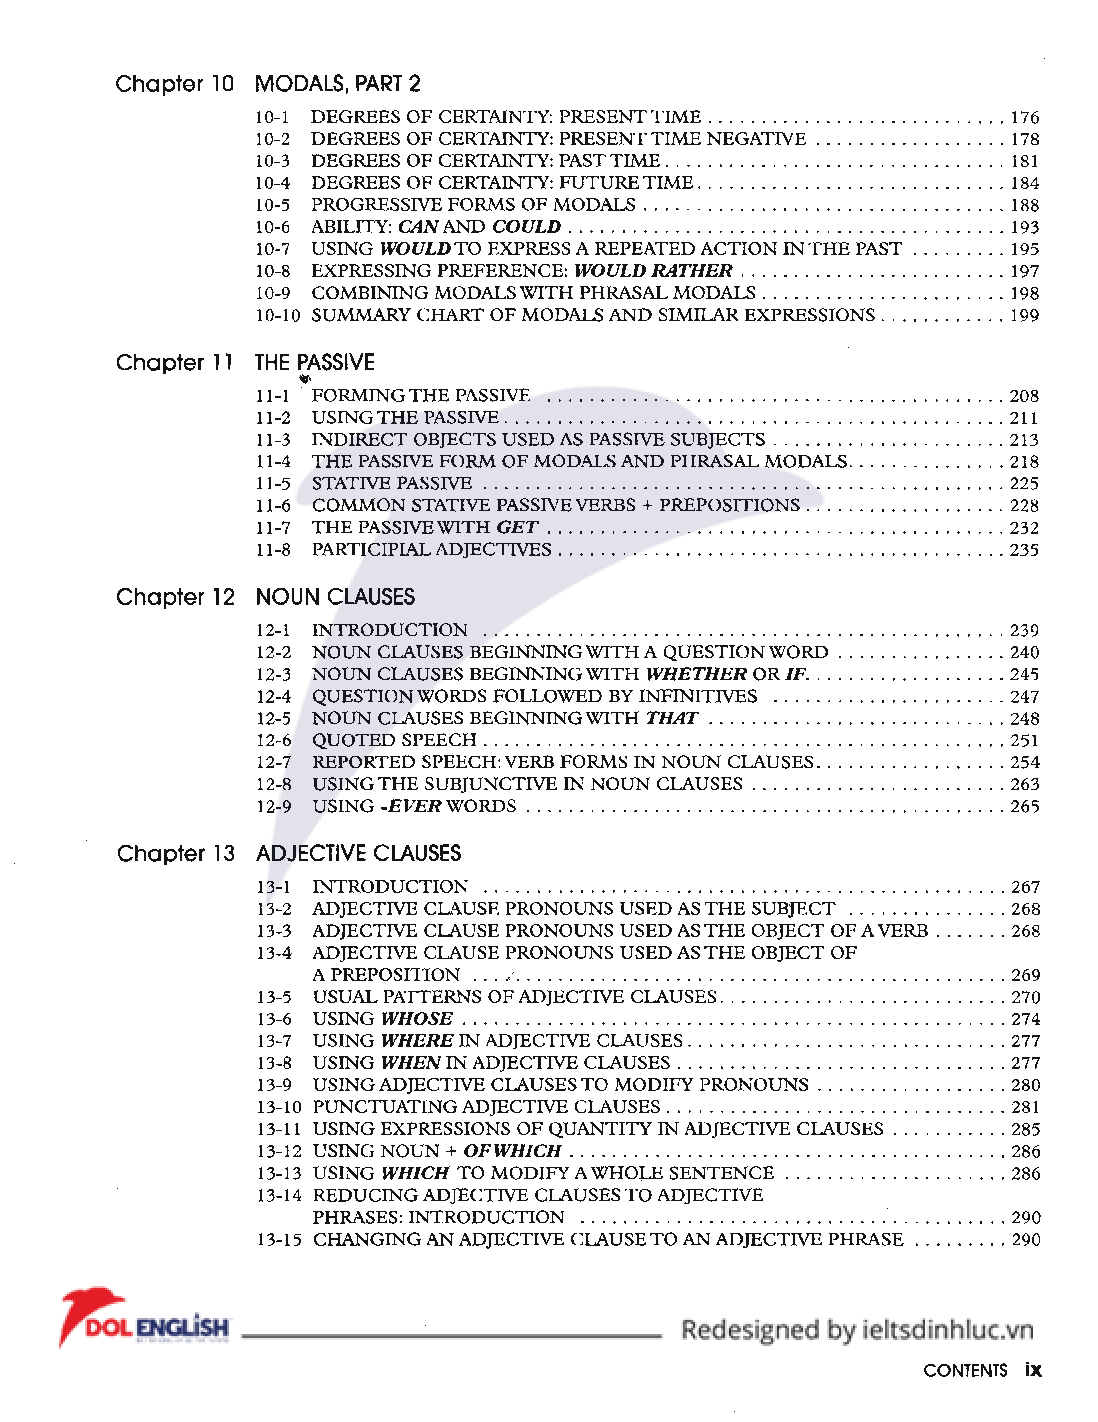 Sách Understanding and using English Grammar | Xem online, tải PDF miễn phí (trang 6)